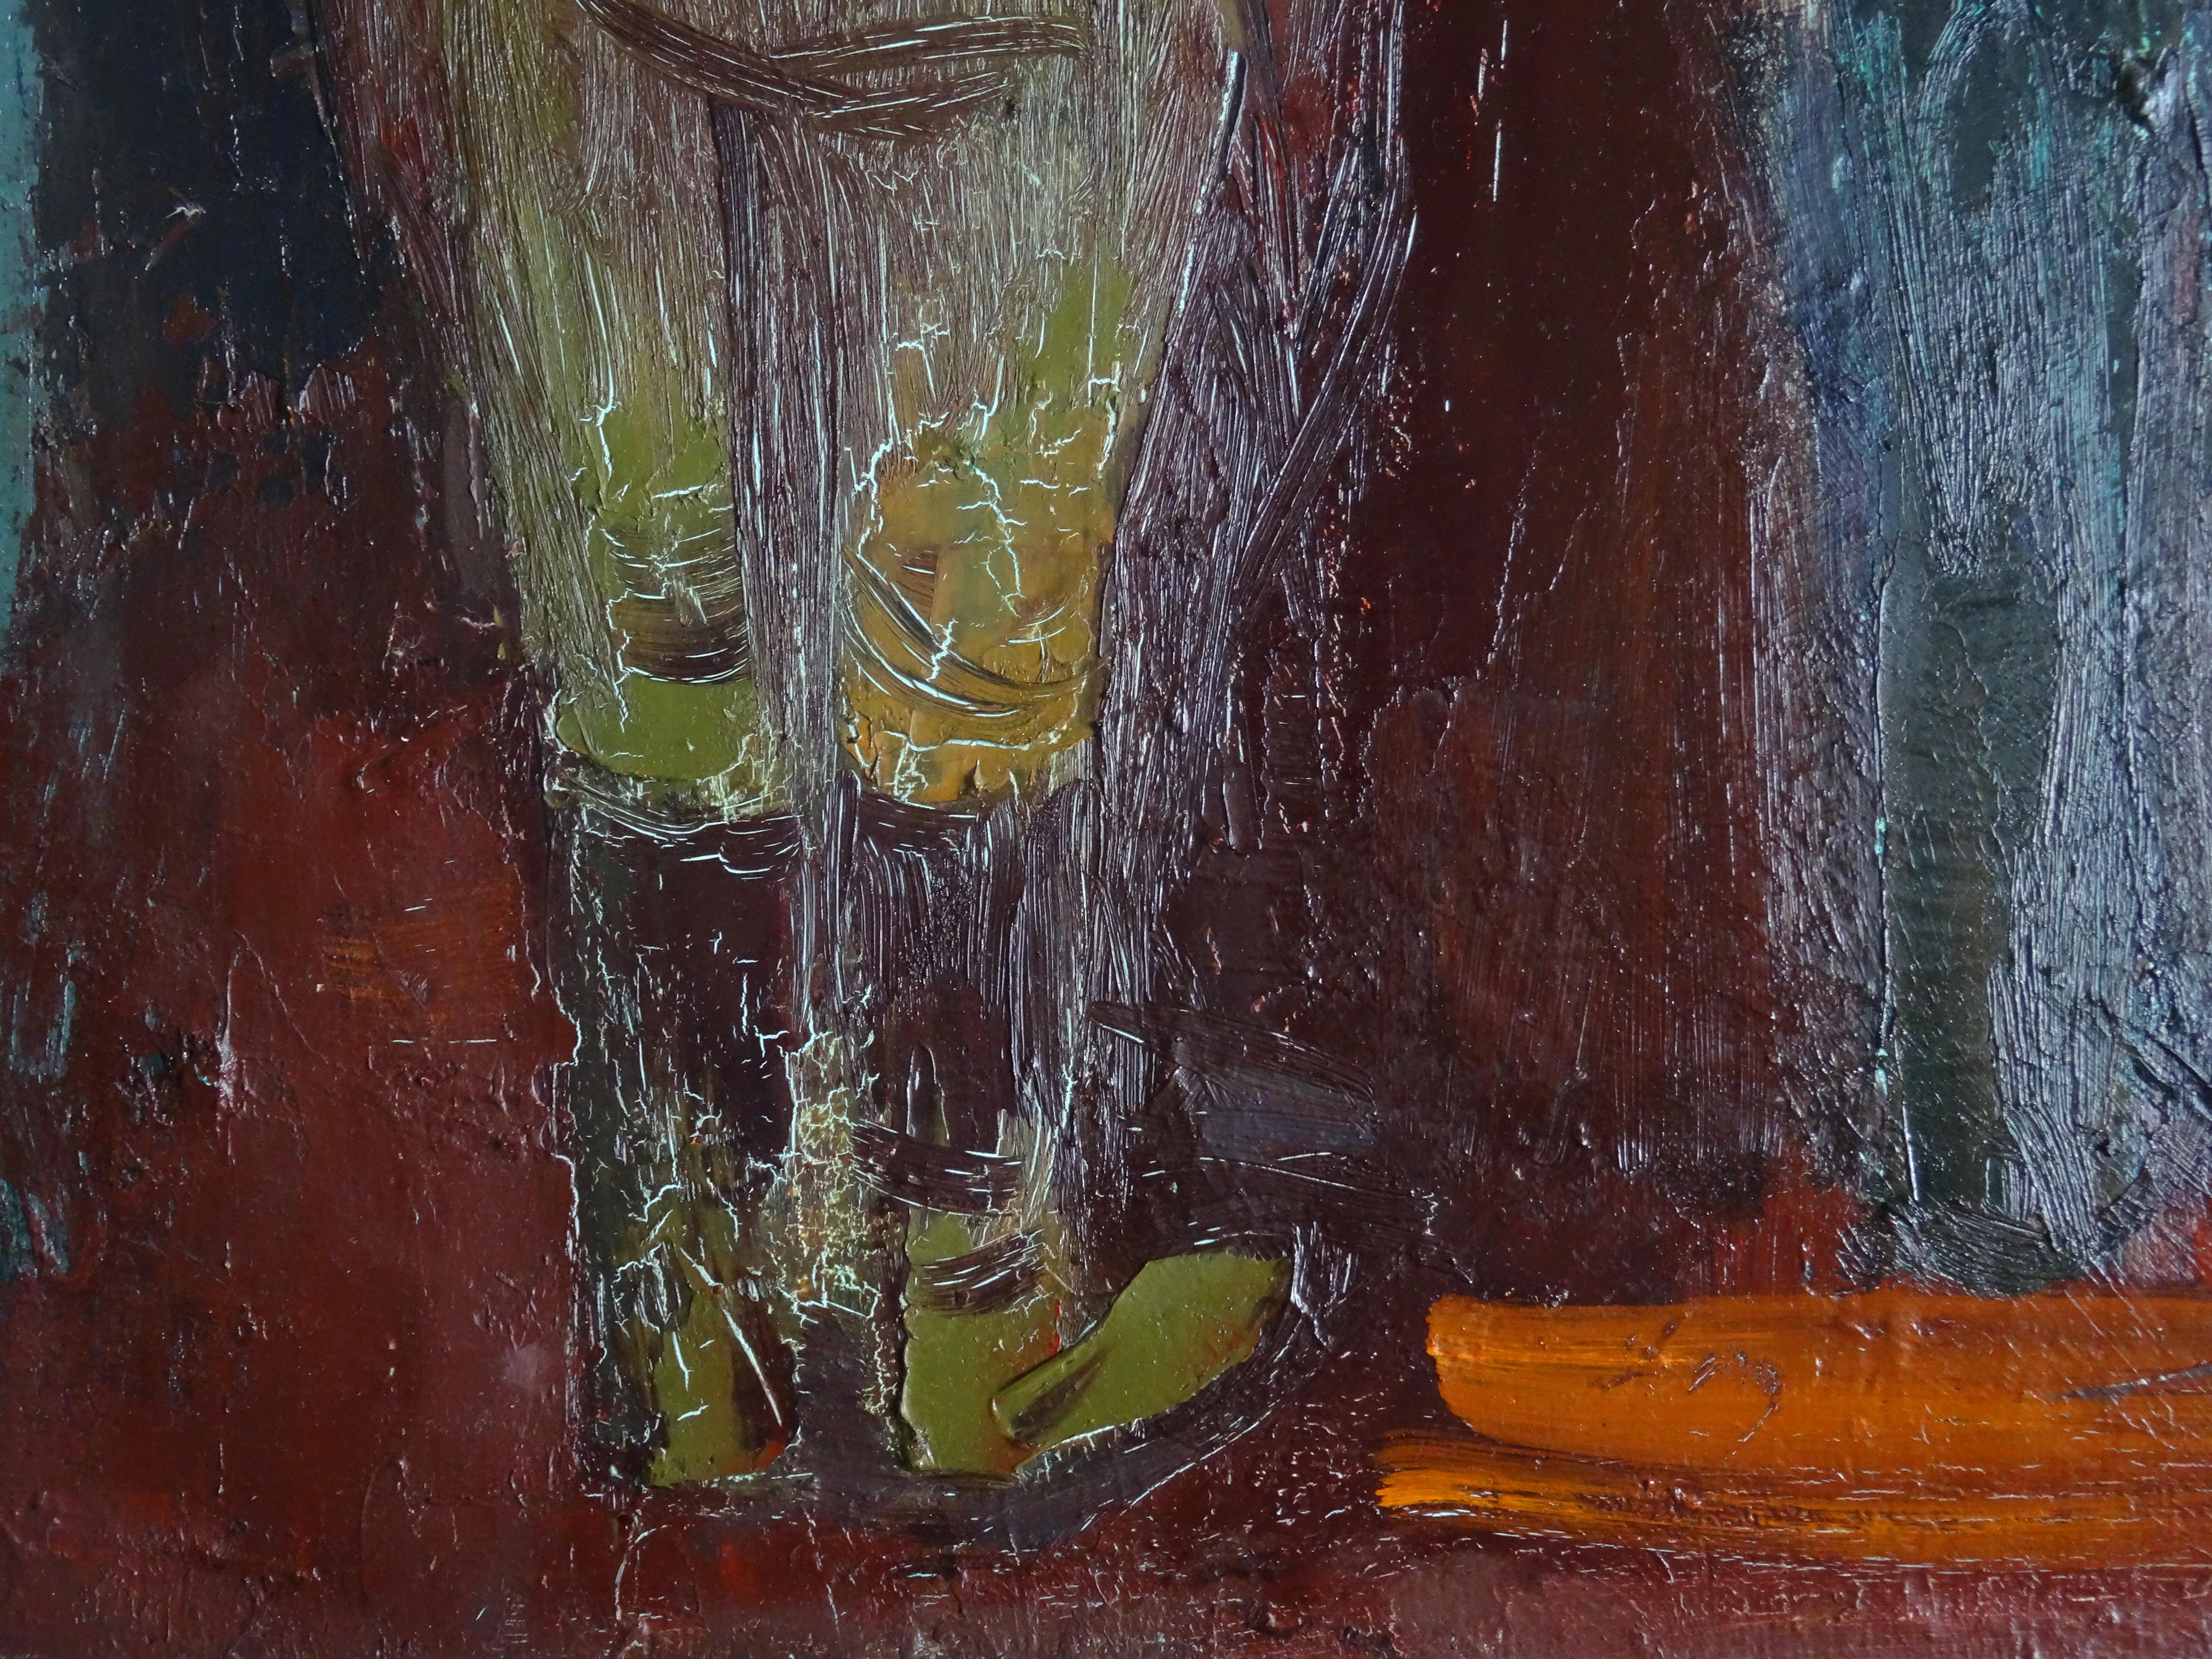 Erste Furche. 1980. Öl auf Leinwand, 73x54 cm

Aleksandr Rodin (1922-2001)
Maler, geboren in einer Bauernfamilie. Ehefrau Rasma Lace - Kunstwissenschaftlerin. Studium an der Stalingrader Kunstschule, Kunstschule Saratow, Abschluss an der Abteilung